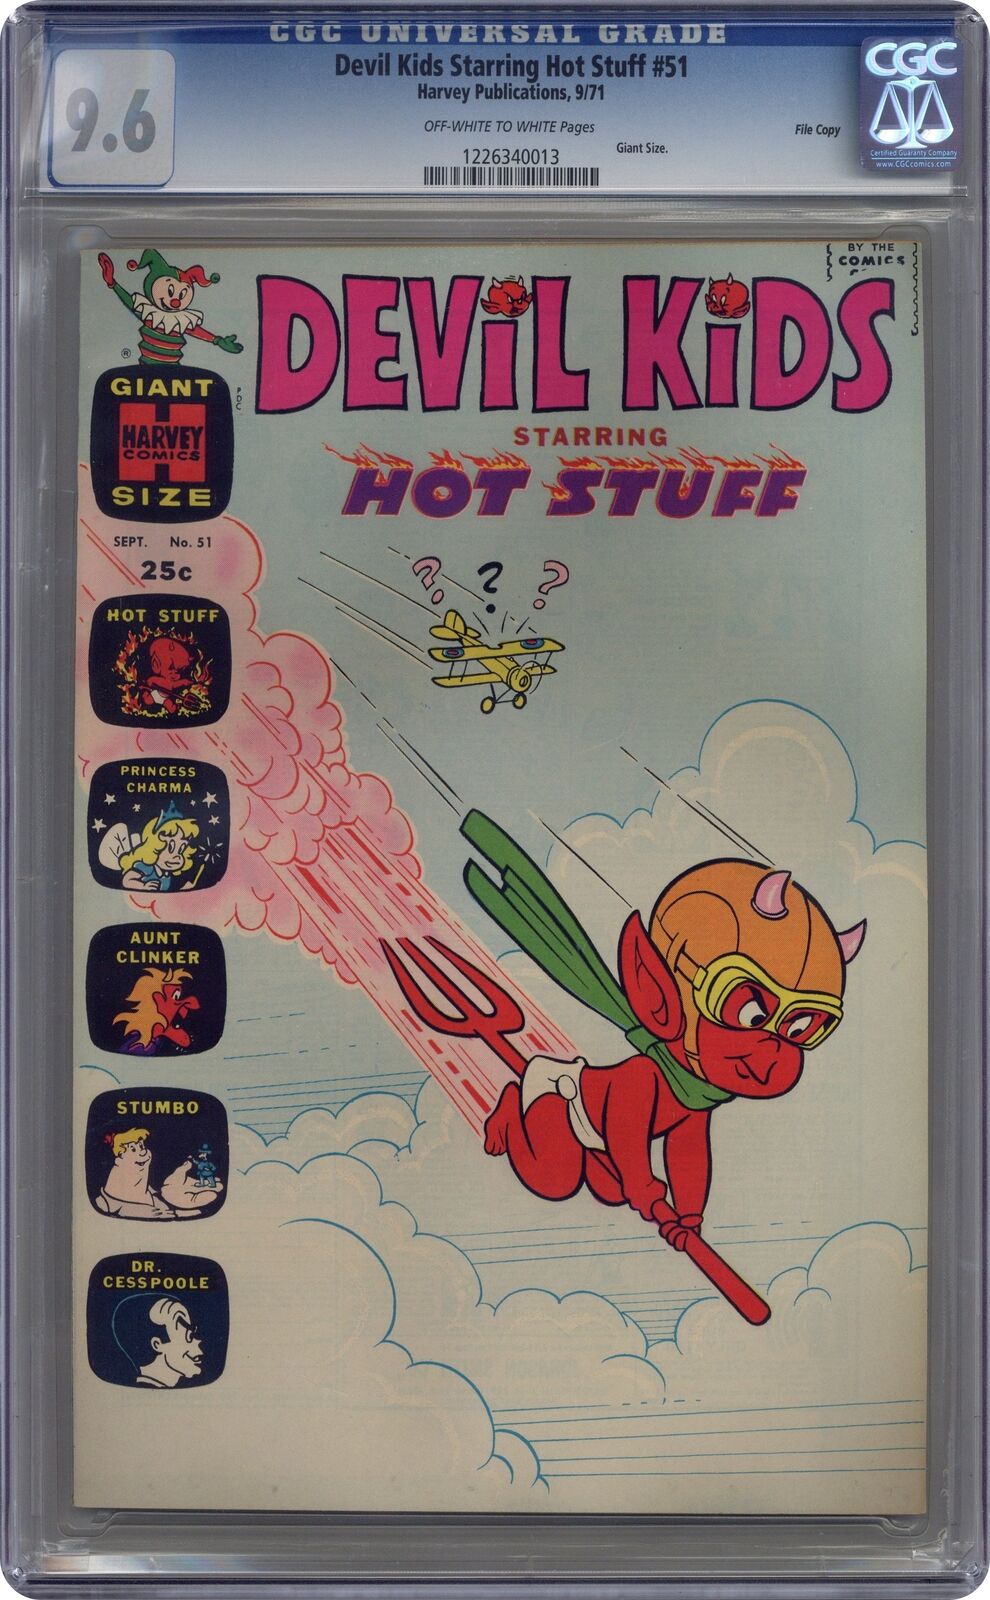 Devil Kids Starring Hot Stuff #51 CGC 9.6 1971 1226340013